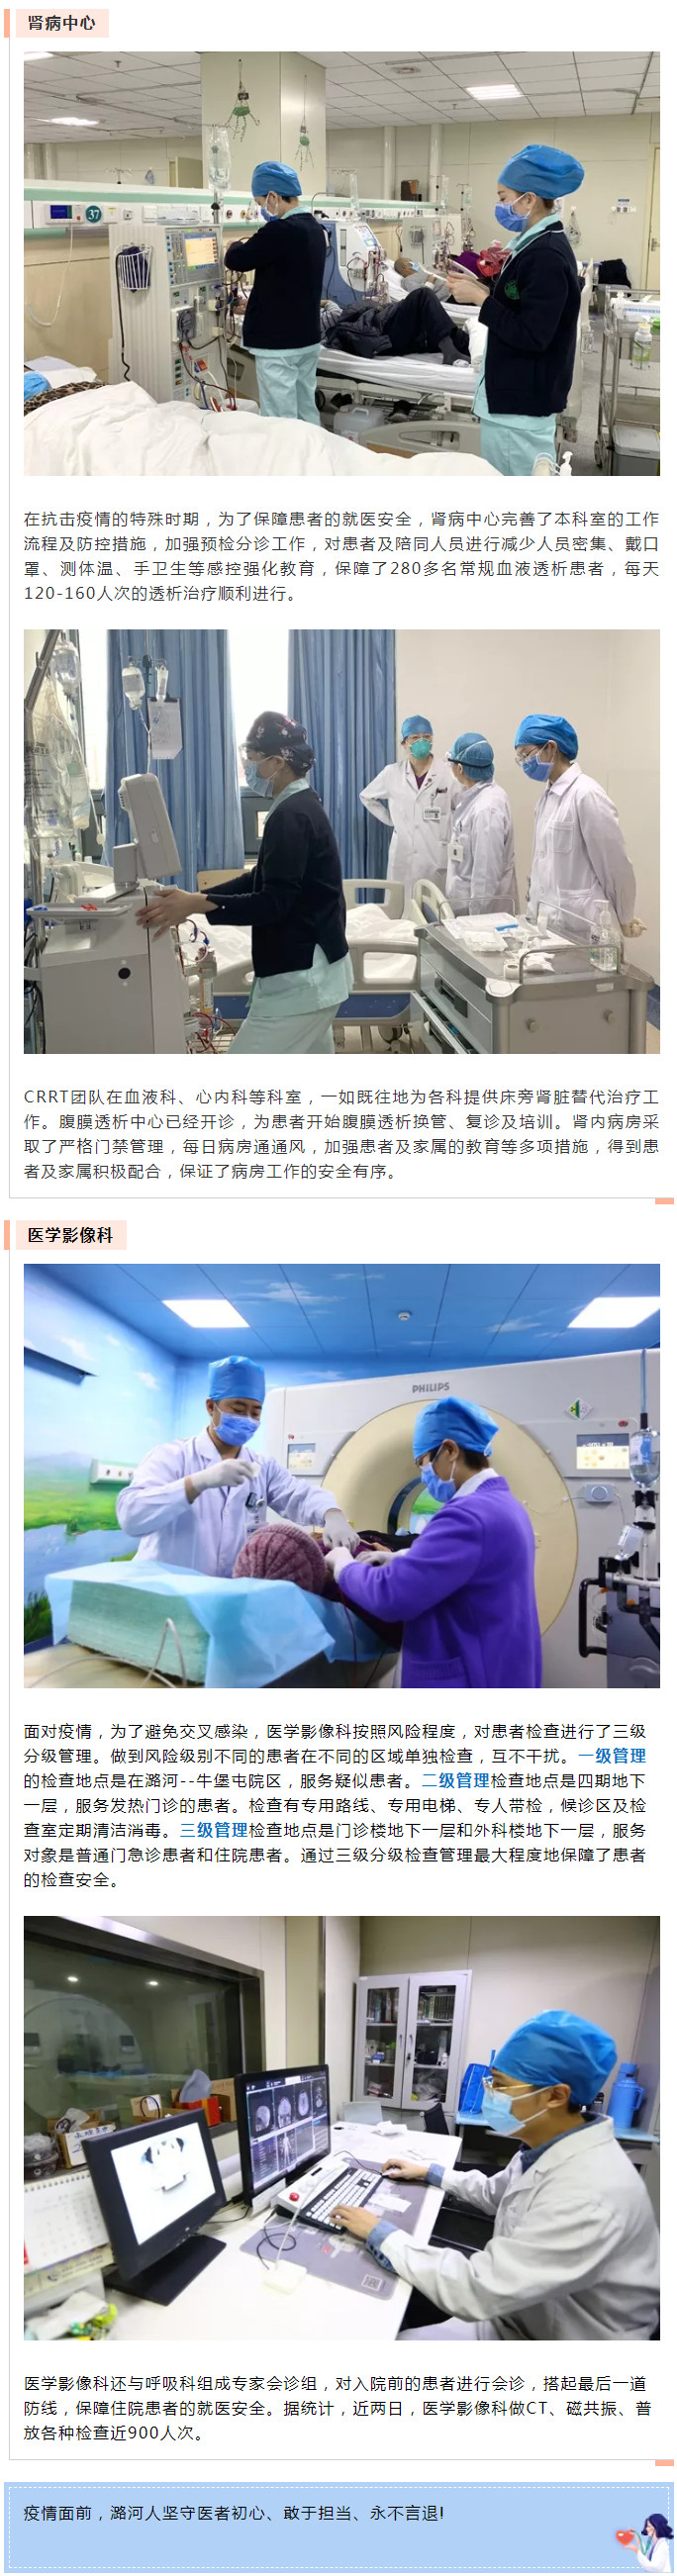 潞河医院基本医疗正常有序平稳进行（二）---2.jpg